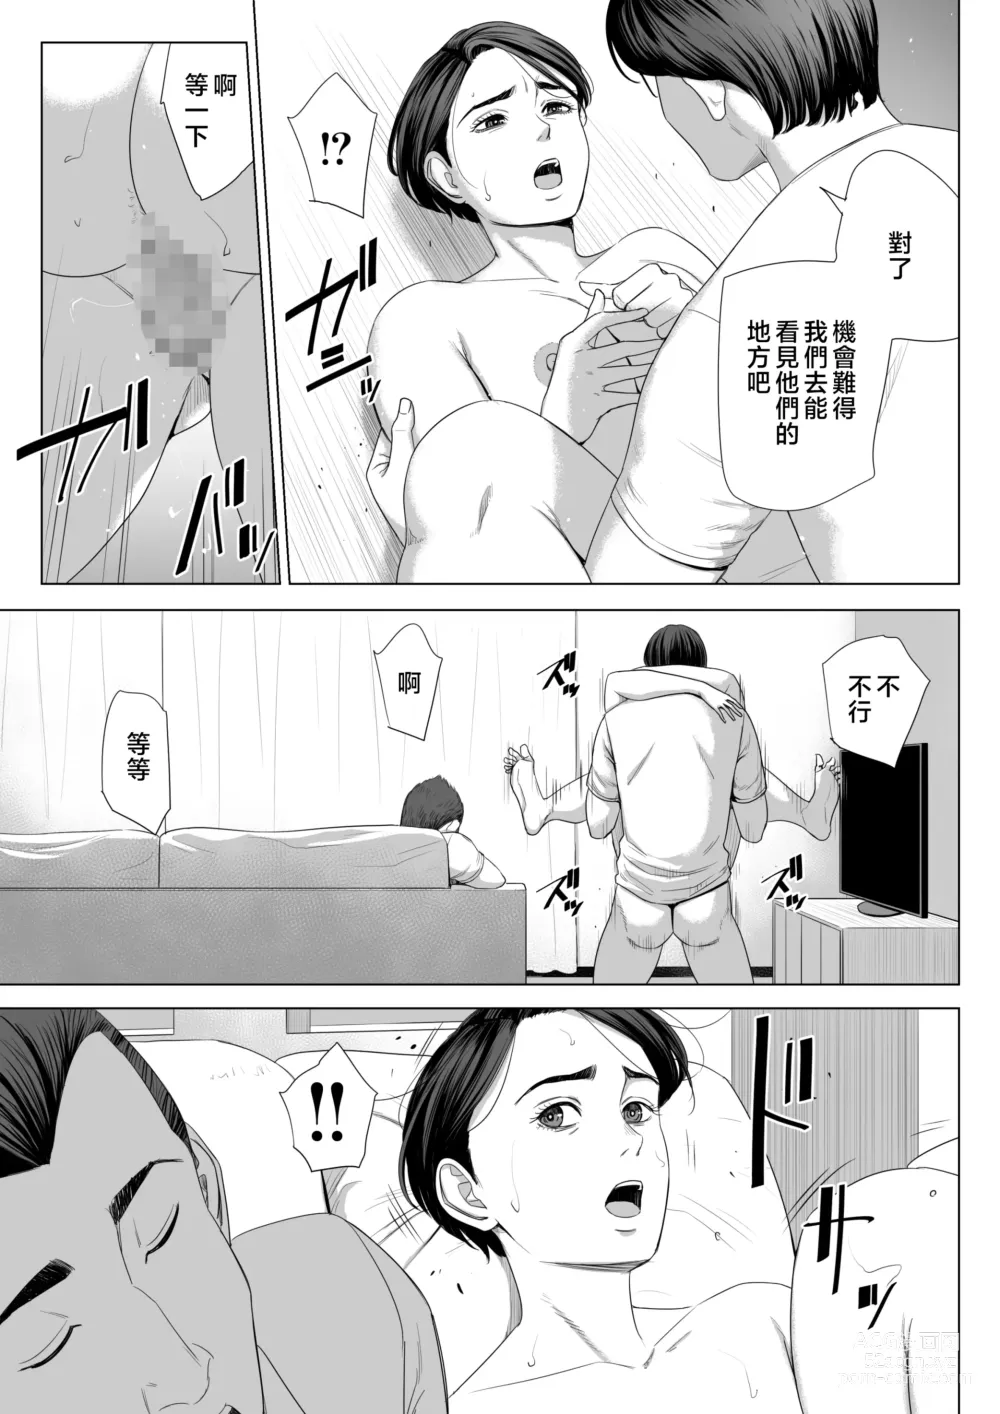 Page 70 of doujinshi Gibo no Tsukaeru Karada.